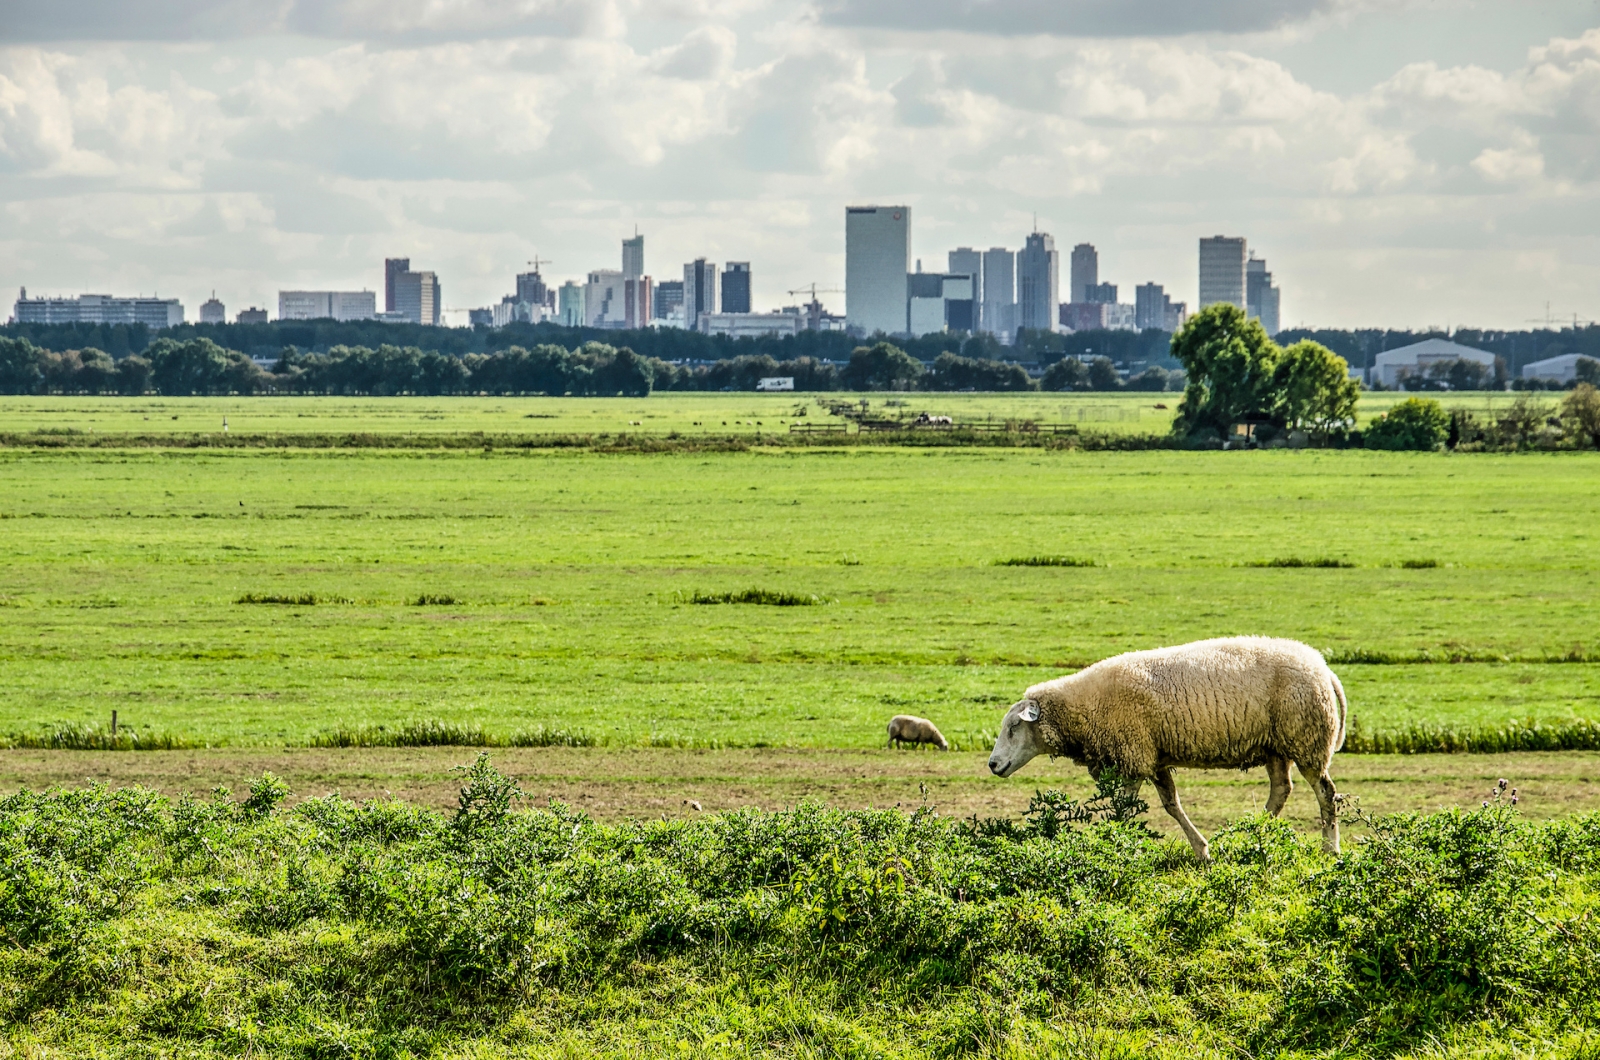 Pecore che camminano su una diga in un polder appena a nord di Rotterdam, Paesi Bassi con lo skyline della città in lontananza